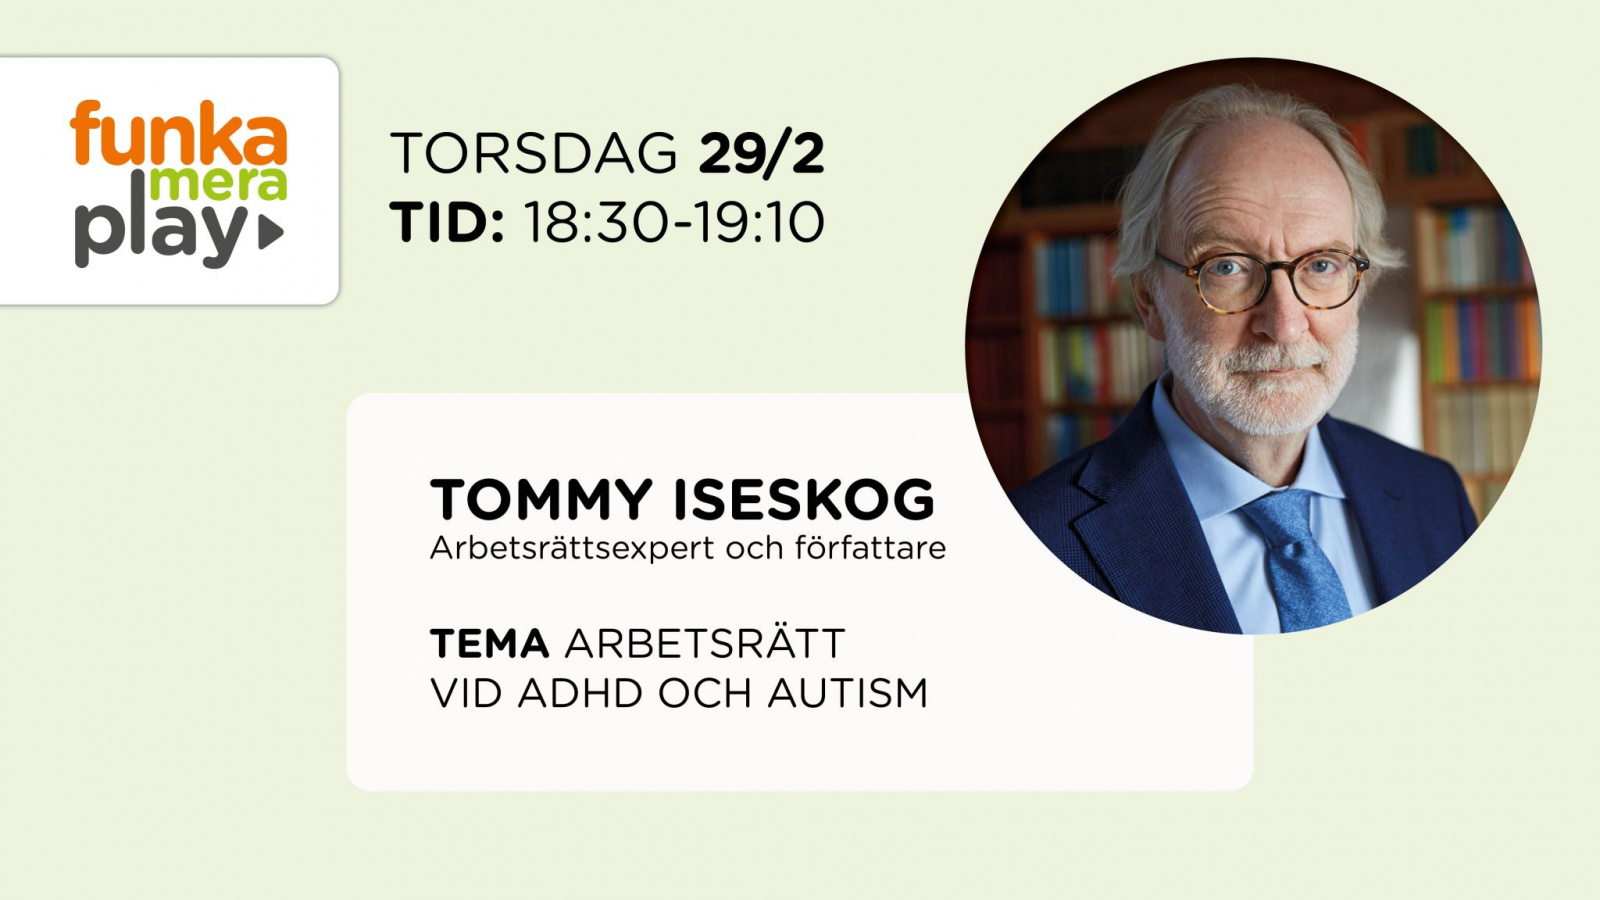 Arbetsrätt vid adhd och autism – experten Tommy Iseskog svarar